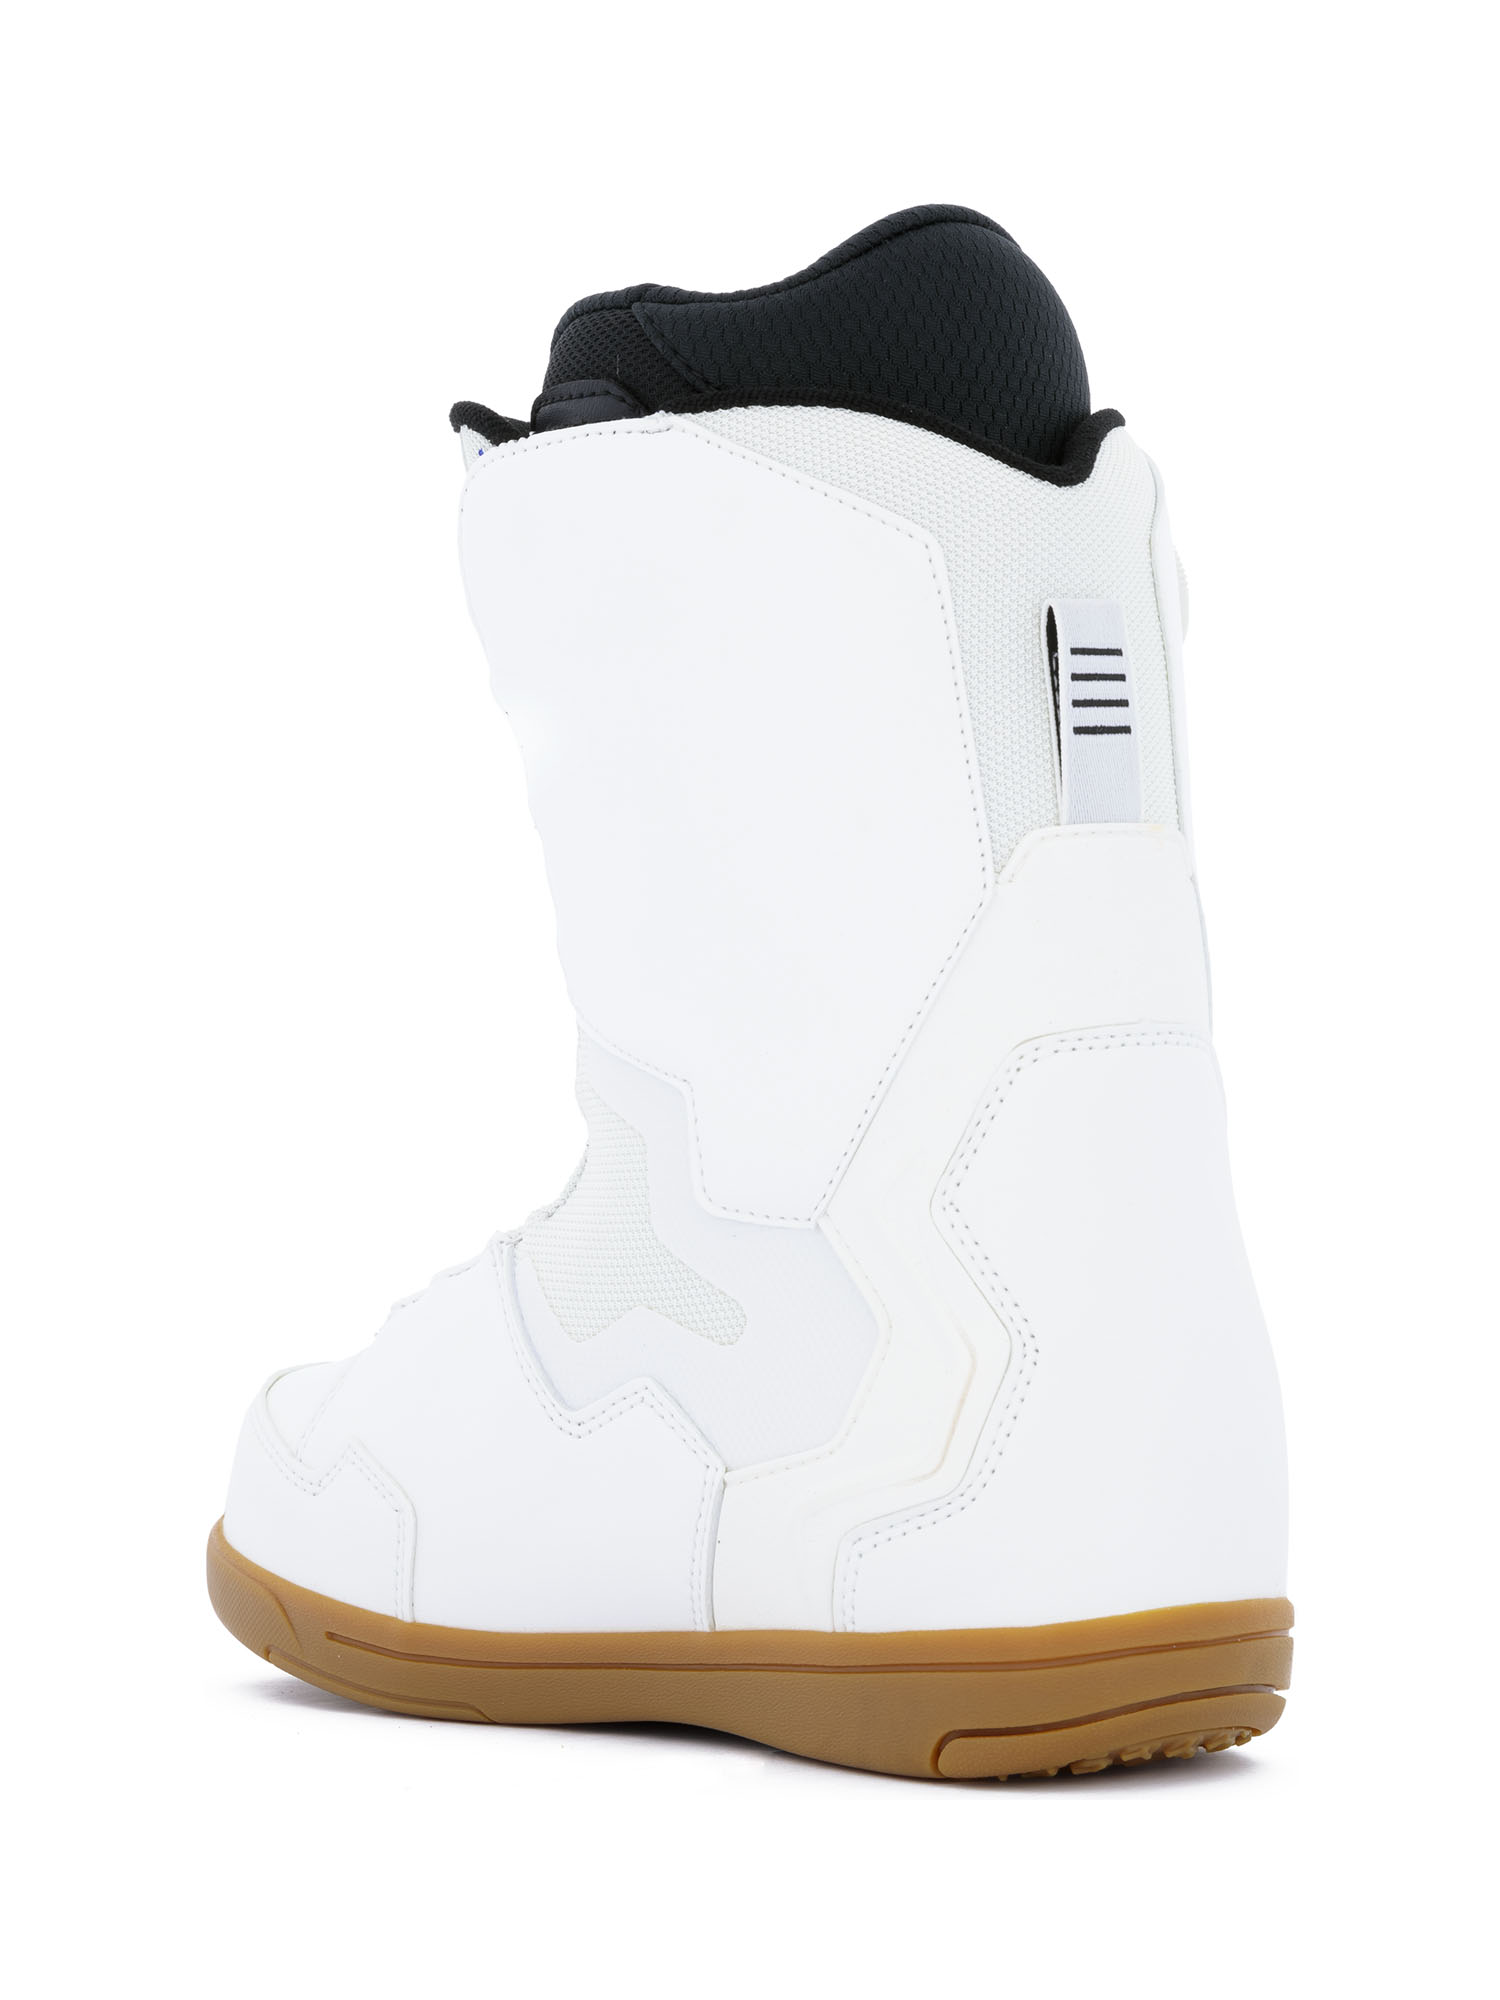 Ботинки для сноуборда DEELUXE Id Dual Boa White